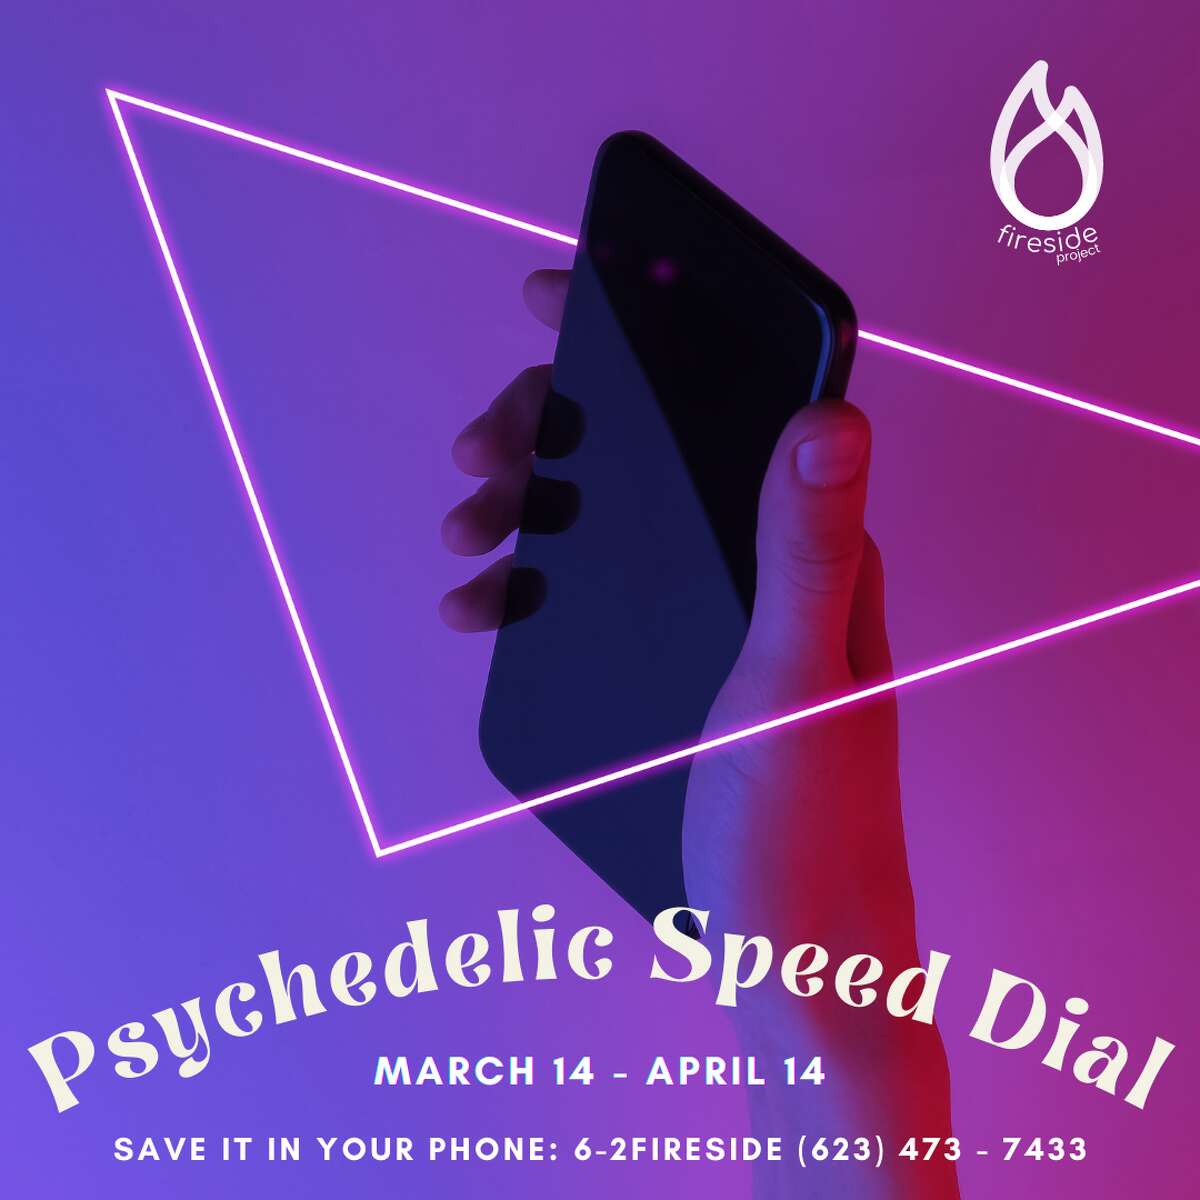 Mise en ligne le 14 avril, la ligne de soutien psychédélique par les pairs du Fireside Project sera ouverte à toutes sortes d'appels.